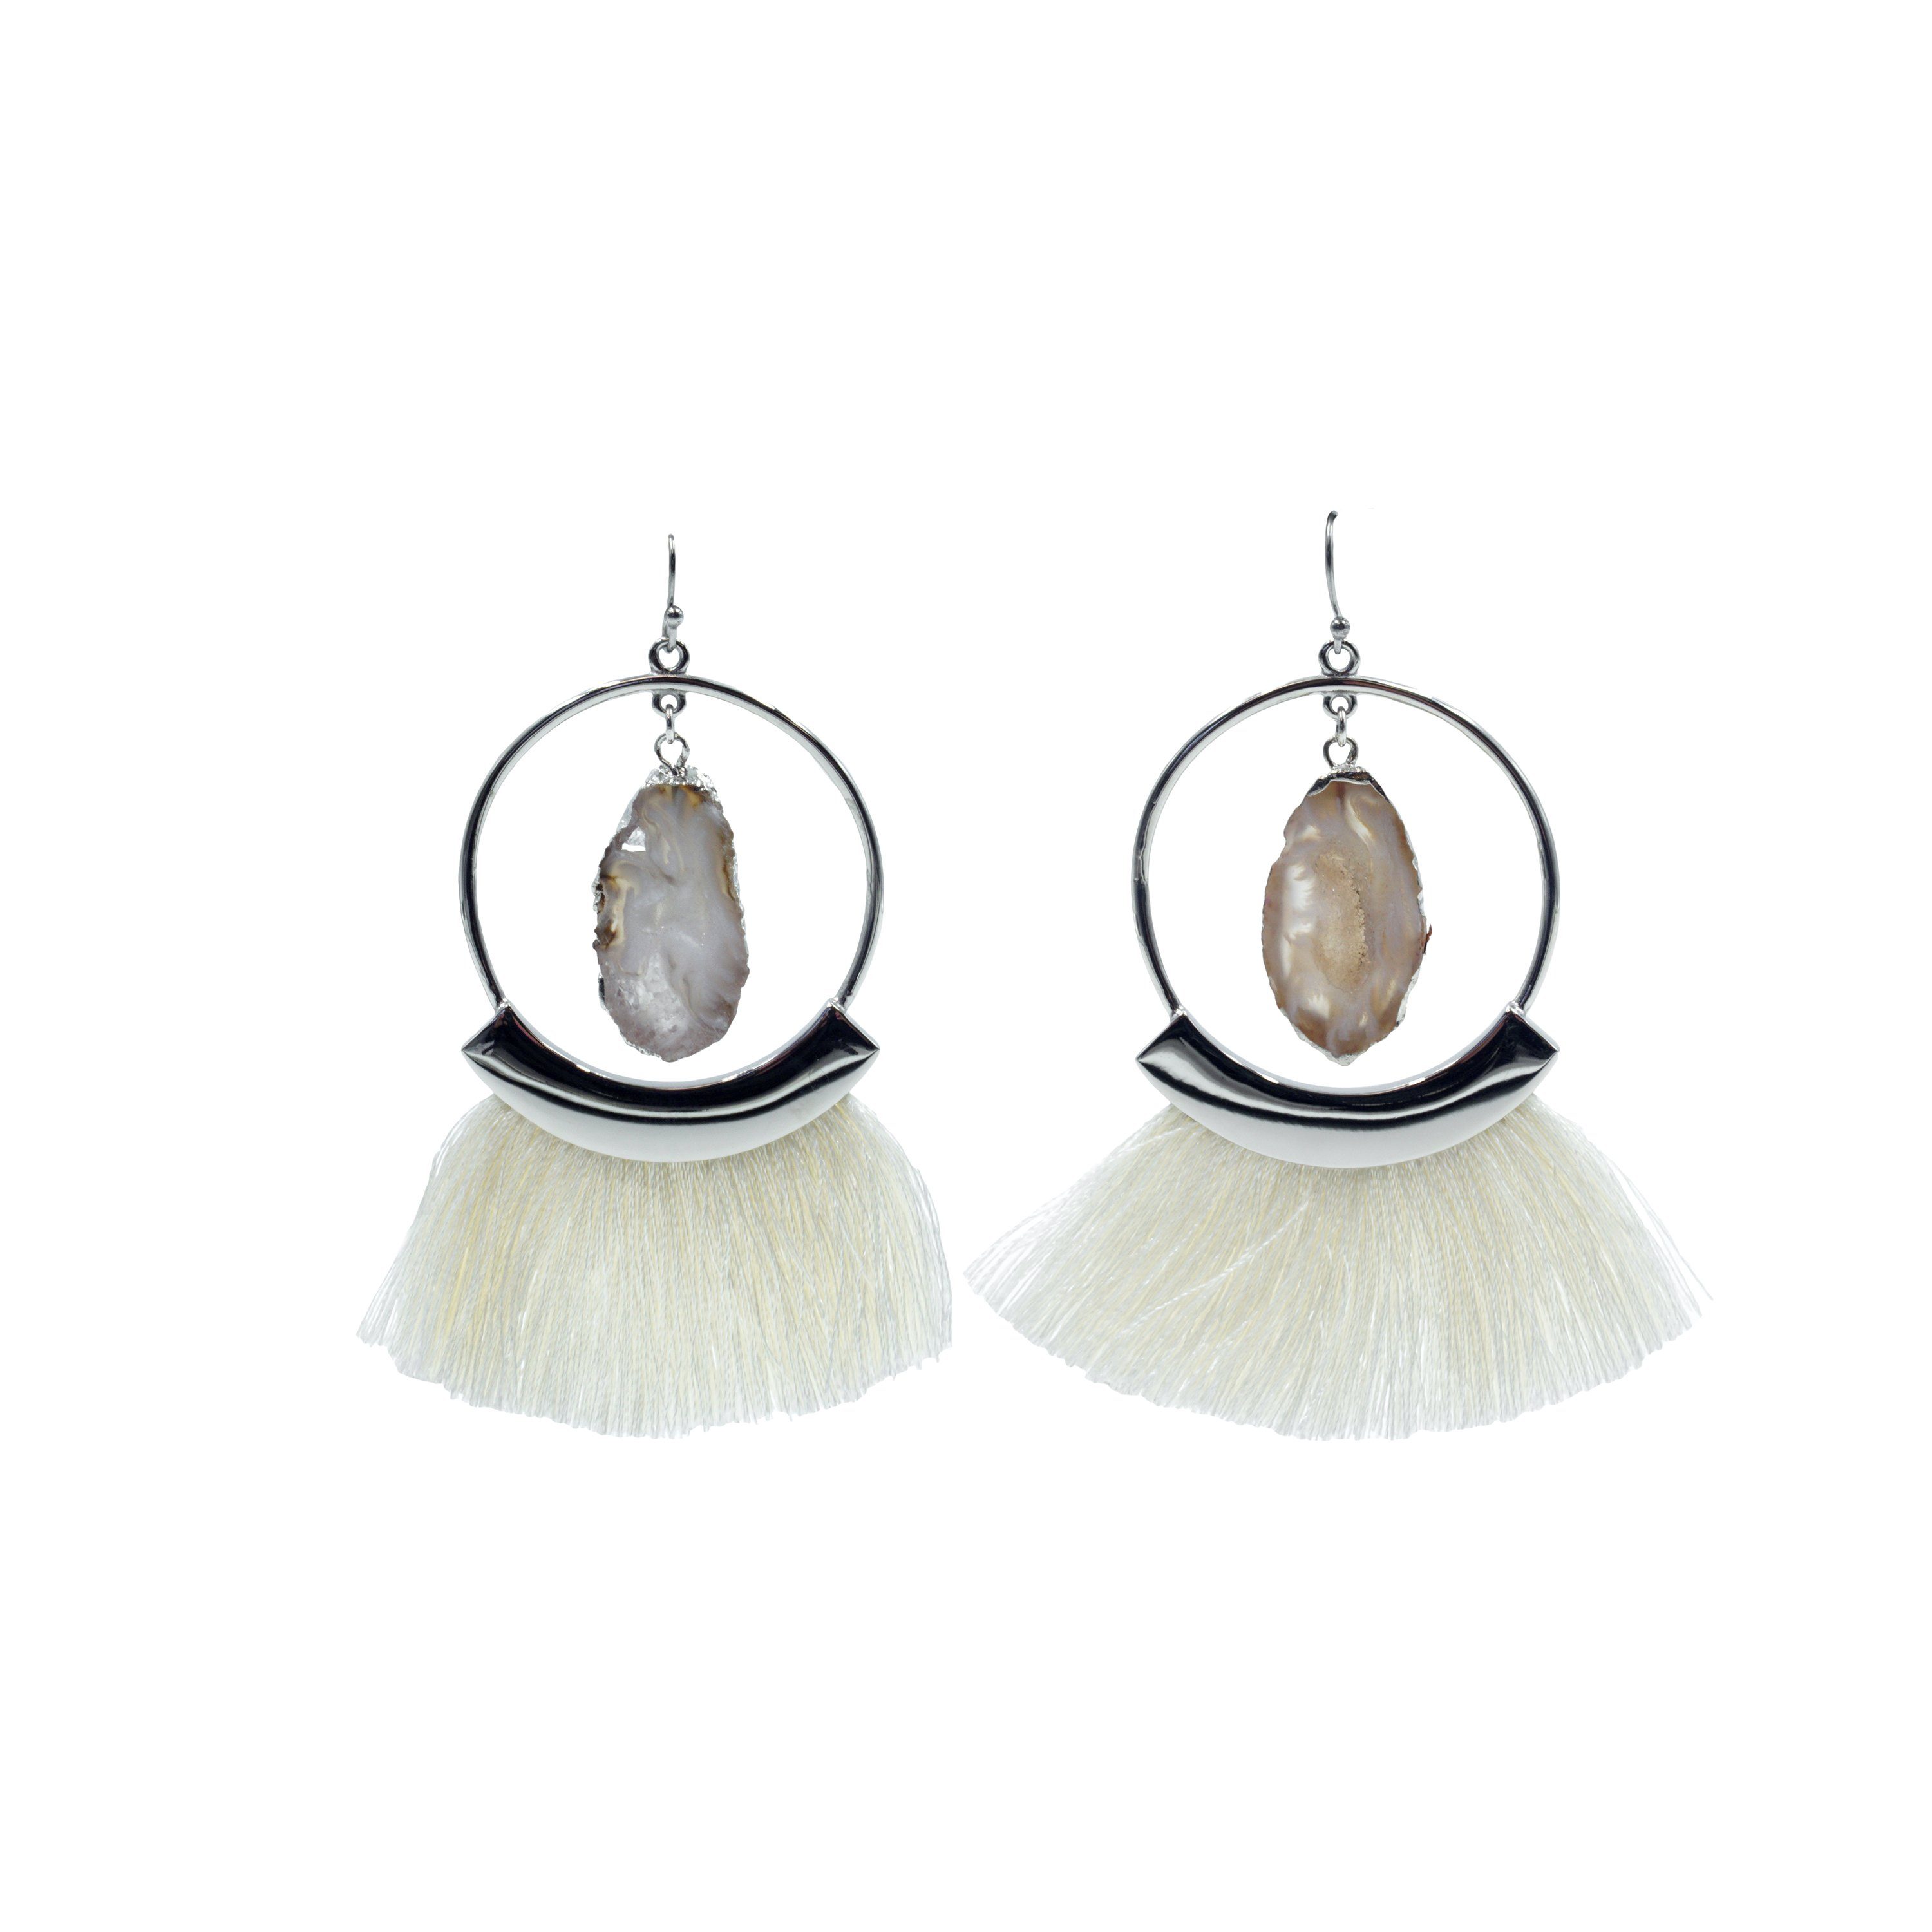 Colección Agate - Pendientes con flecos de plata cenizo joyería fina de diseño para hombres y mujeres